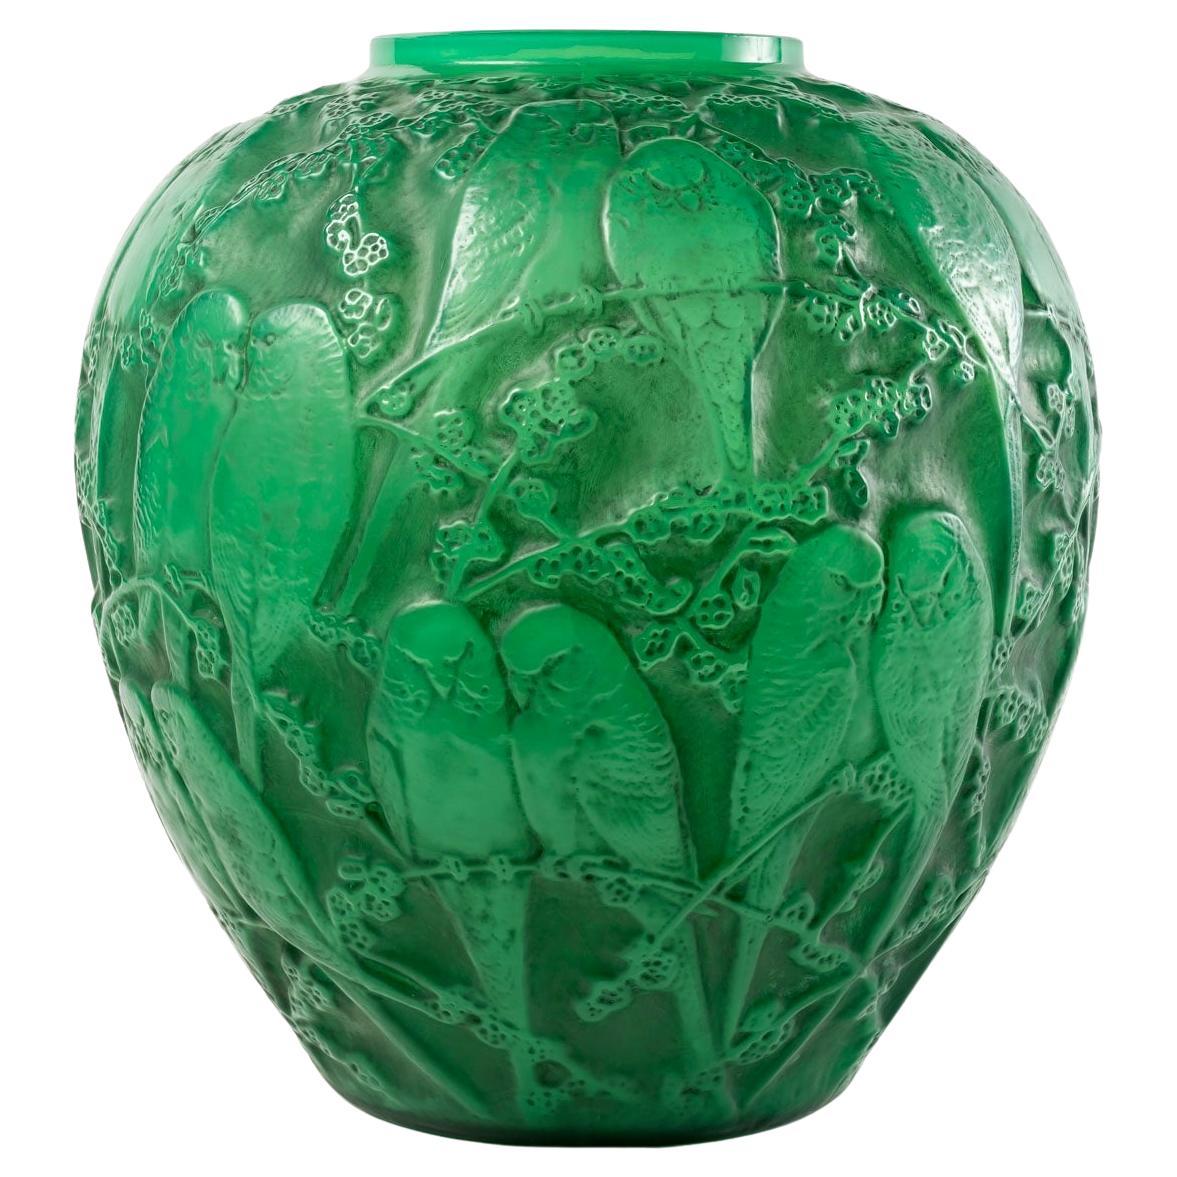 1919 René Lalique - Vase Perruches Cases Verre Vert Jade Avec Patine Grise